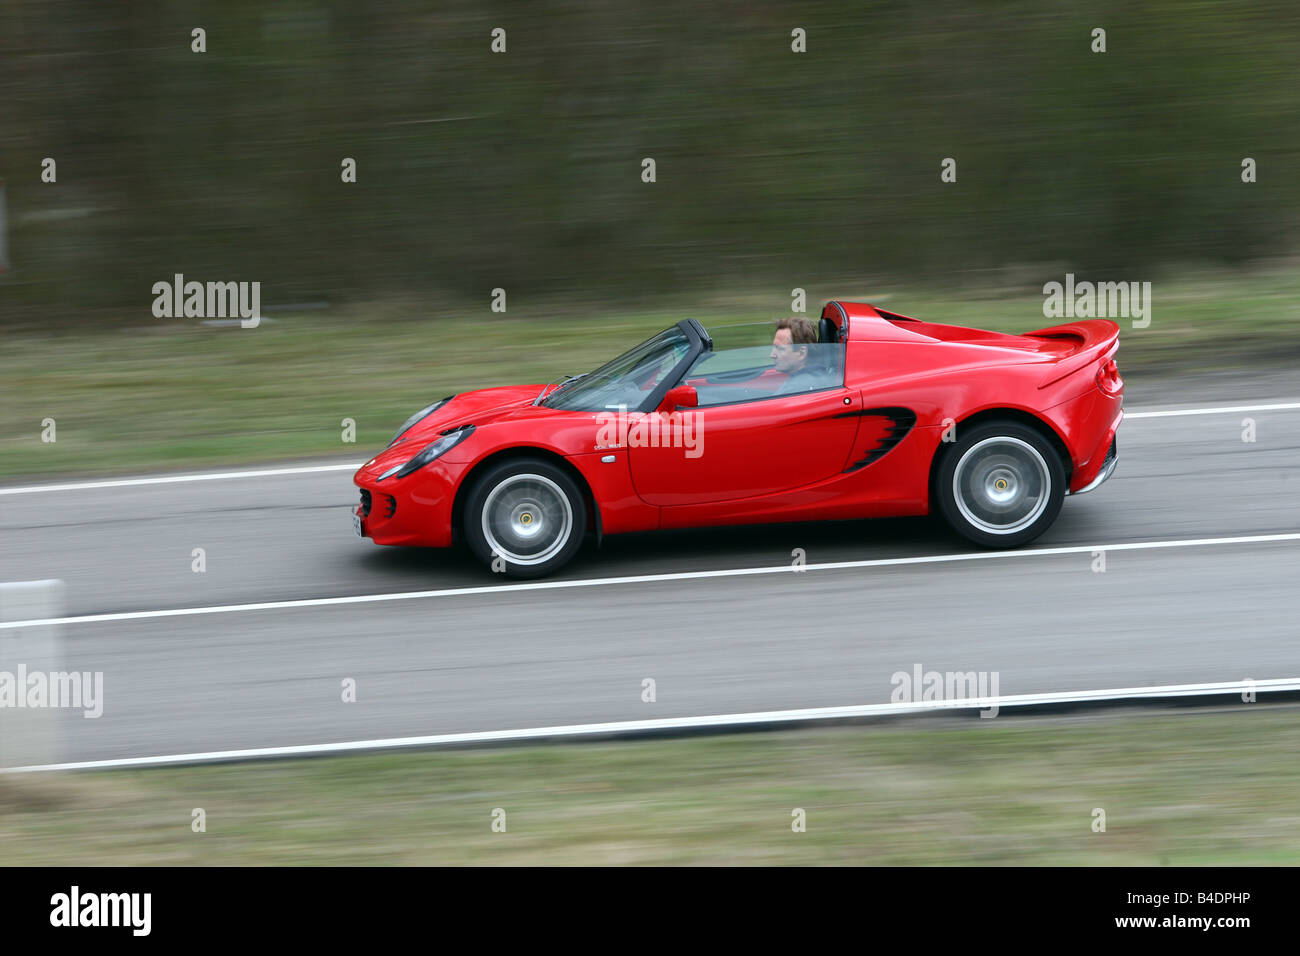 Lotus Elise SC, l'année de modèle 2008-, rouge, conduite, side view, country road, open top Banque D'Images